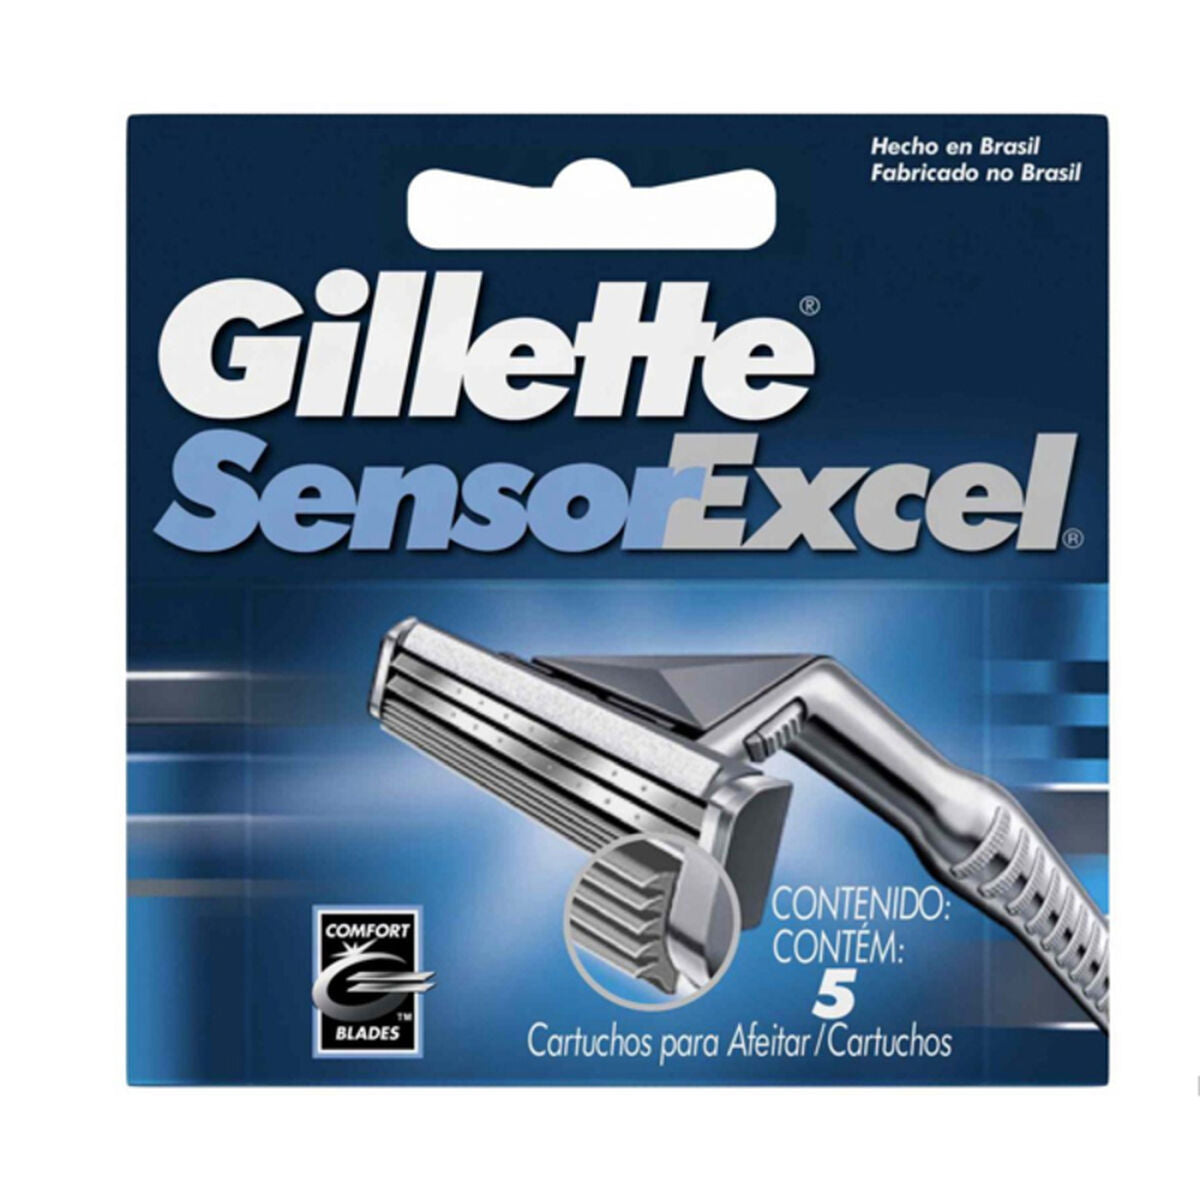 Shaving Blade Refill Sensor Excel Gillette 29754